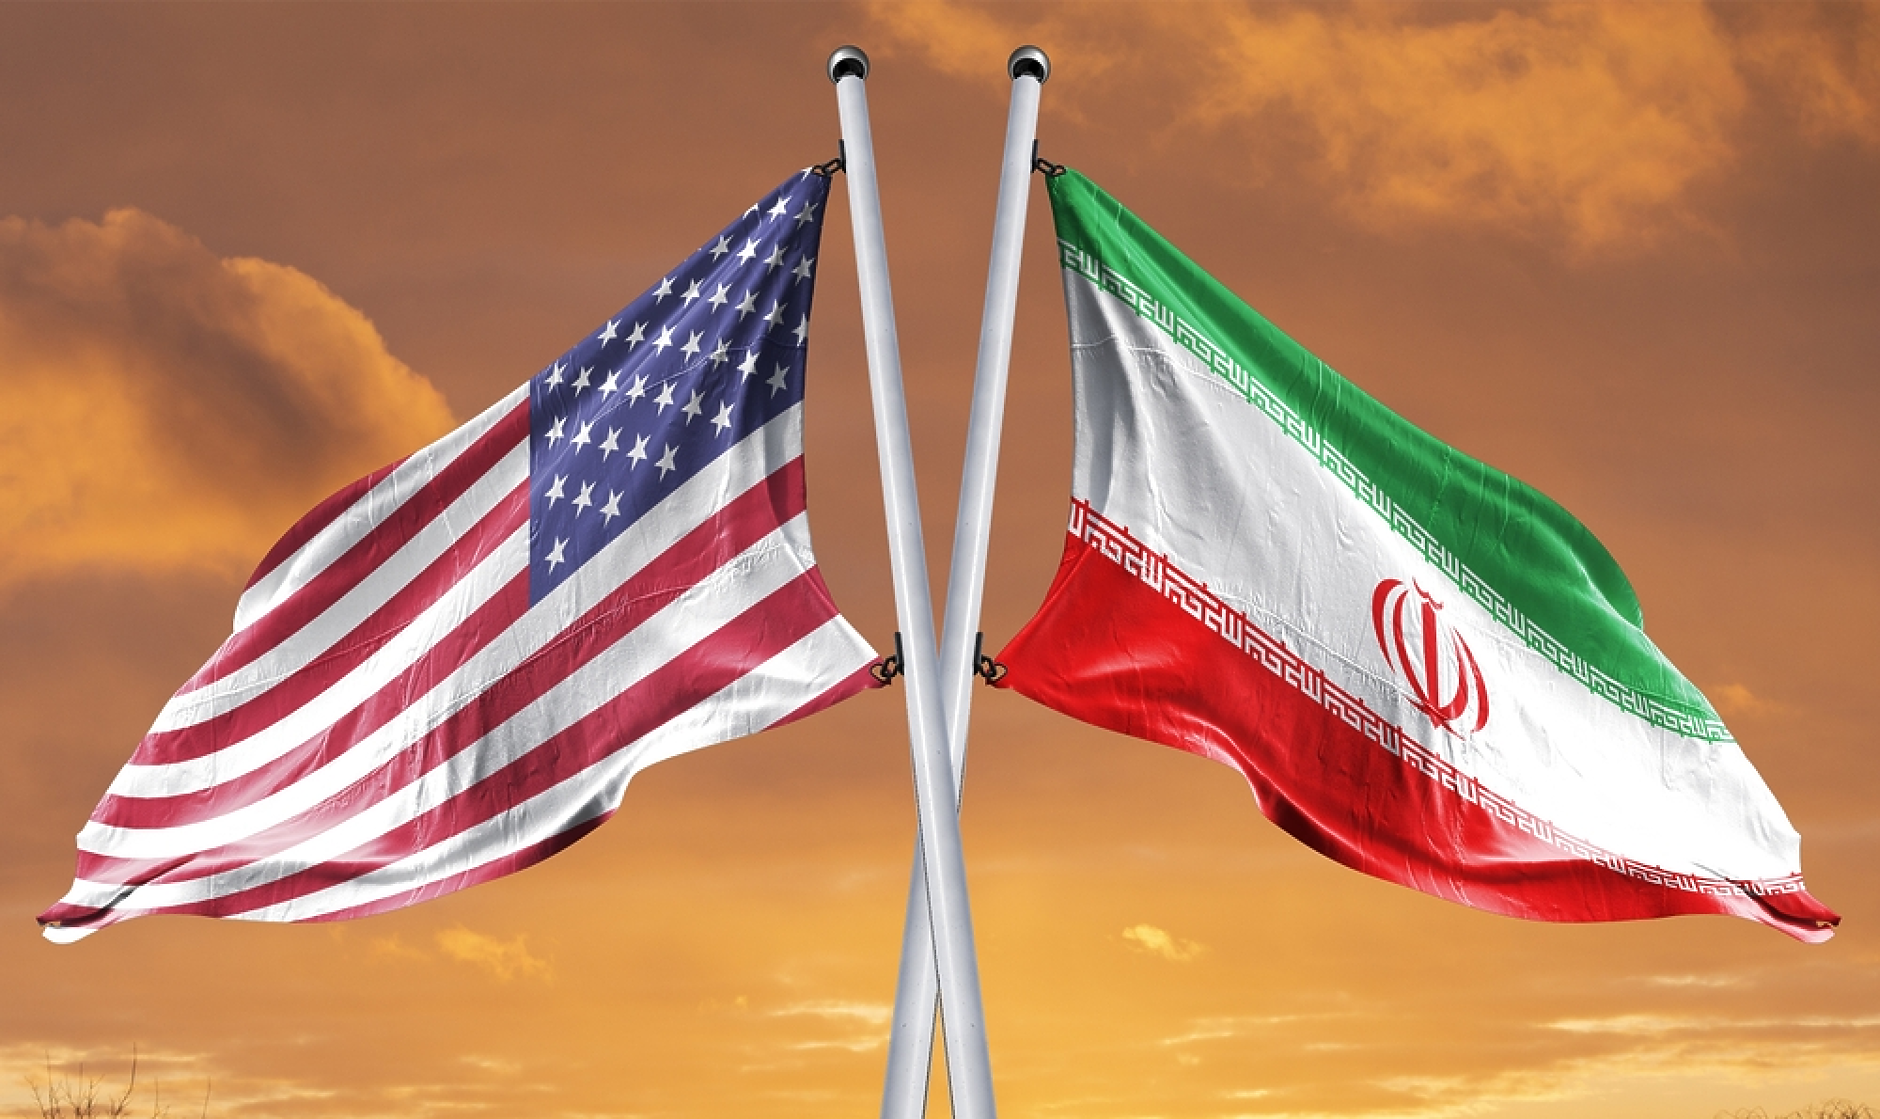 САЩ и Иран са провели непреки разговори в Оман за сигурността в Близкия изток